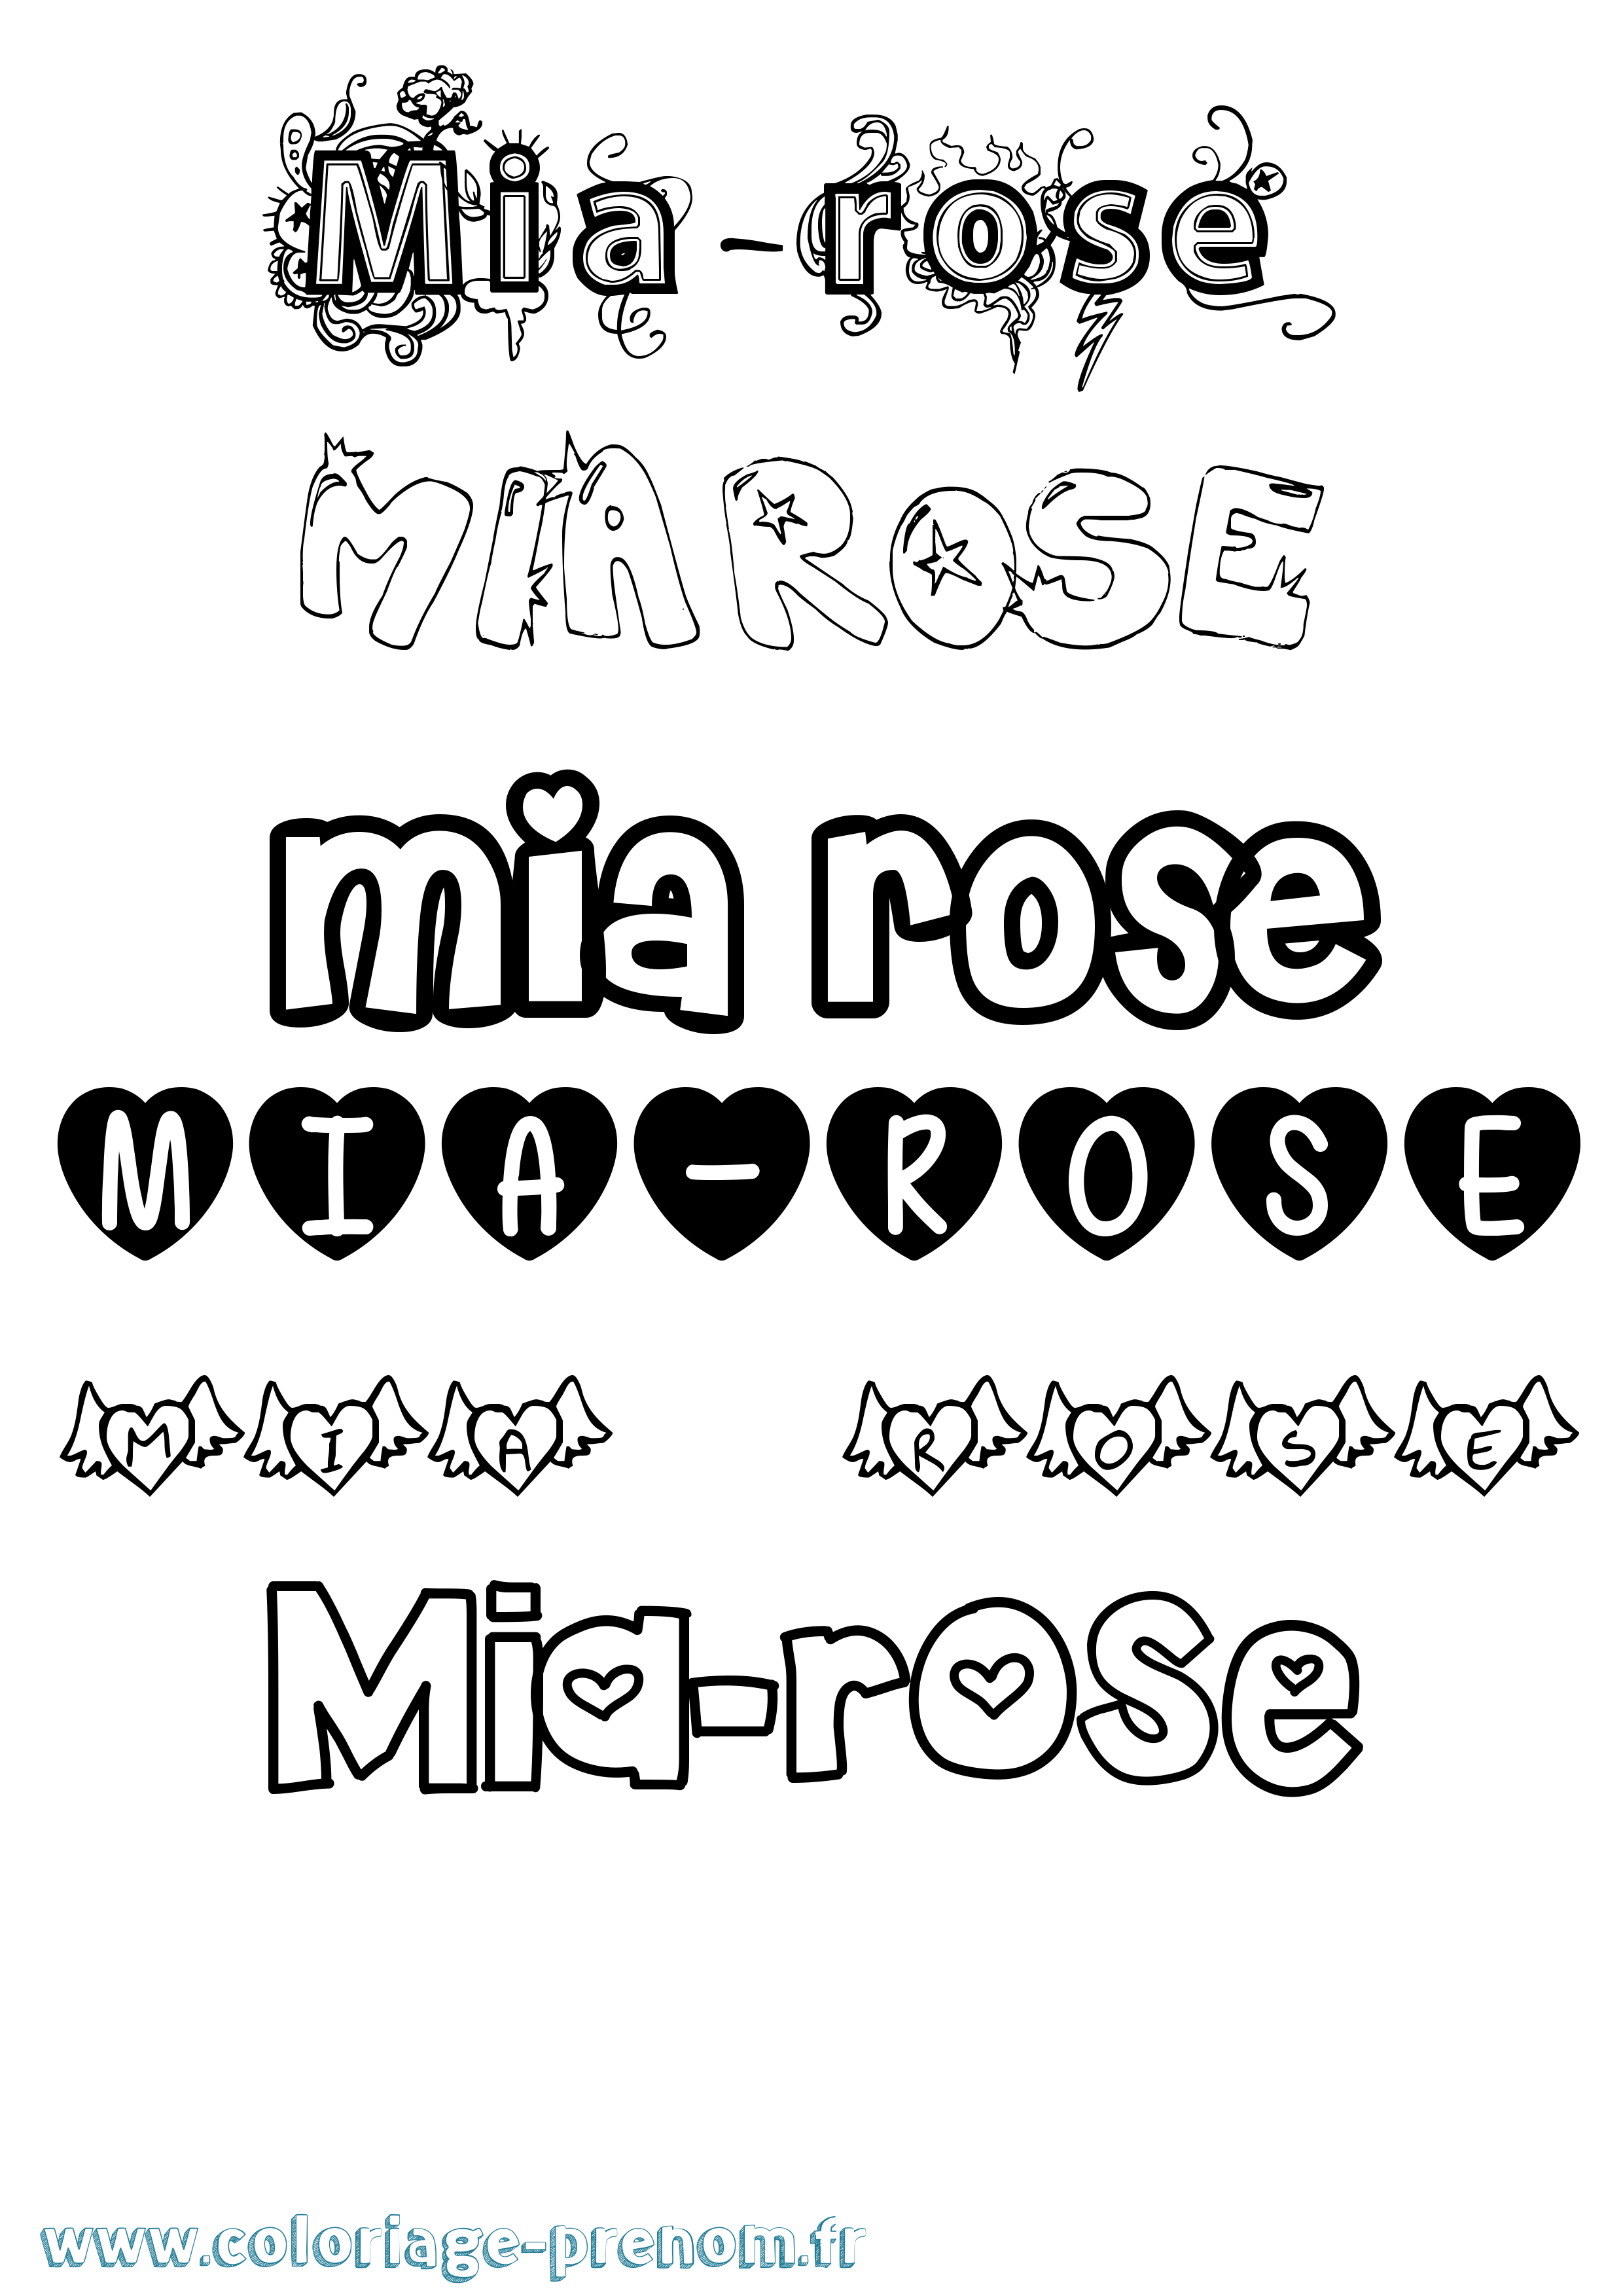 Coloriage prénom Mia-Rose Girly